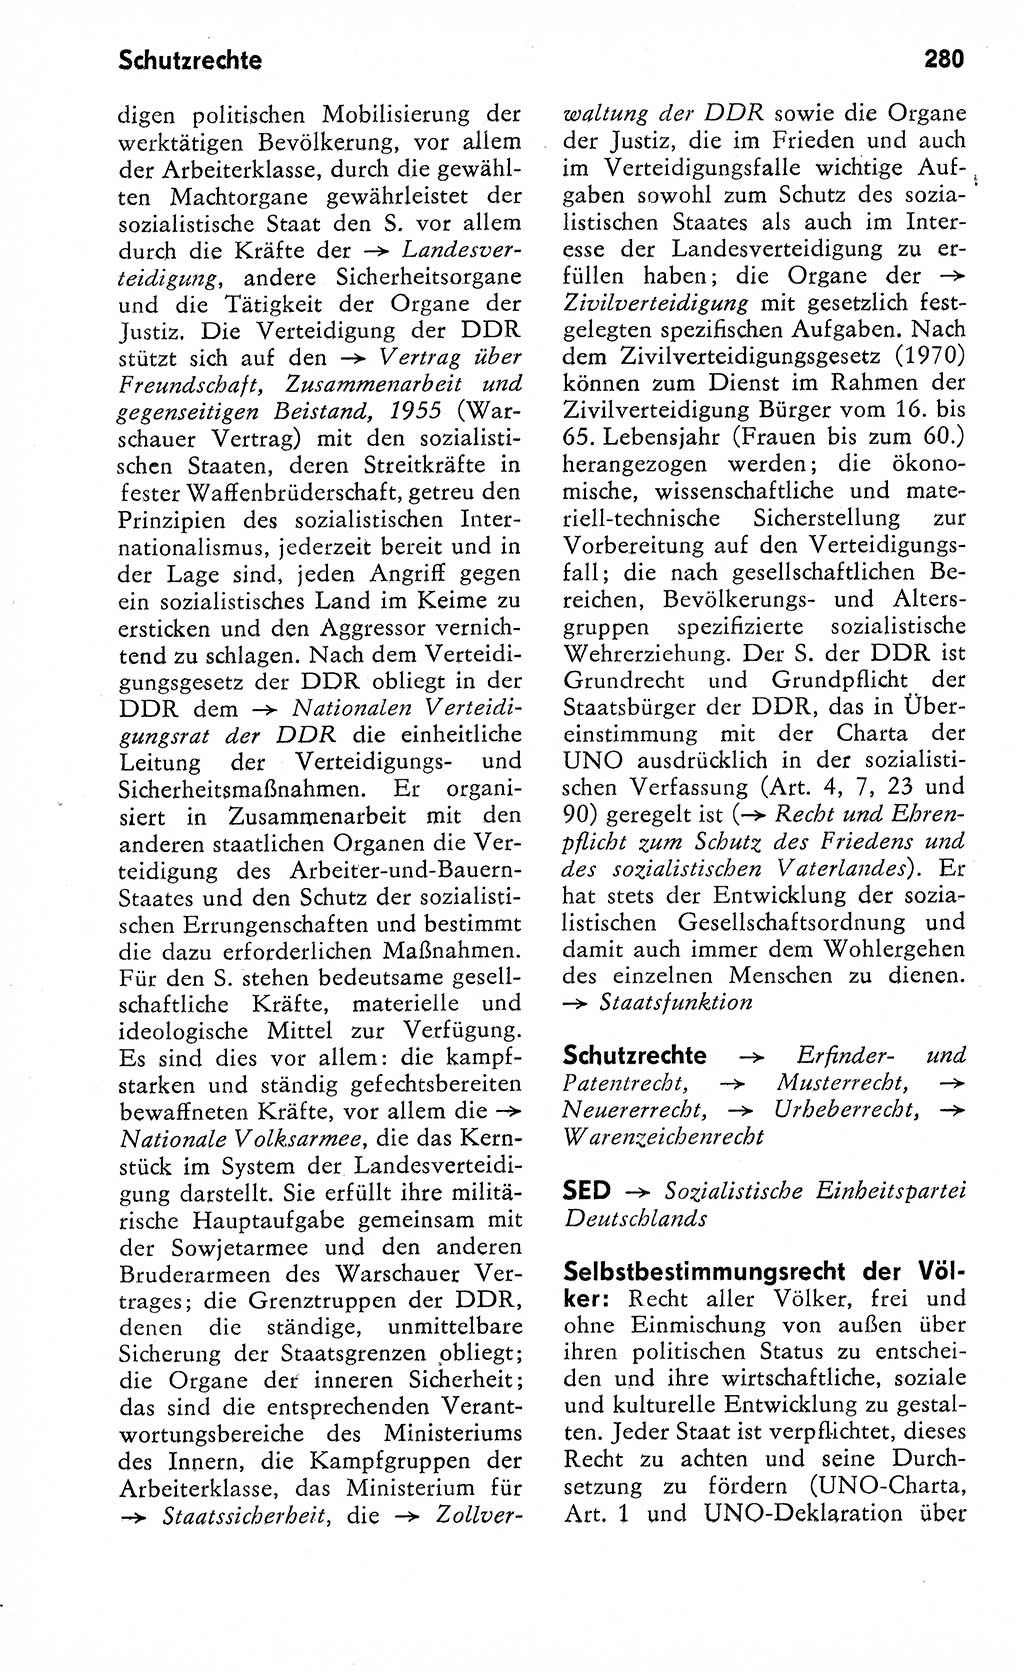 Wörterbuch zum sozialistischen Staat [Deutsche Demokratische Republik (DDR)] 1974, Seite 280 (Wb. soz. St. DDR 1974, S. 280)